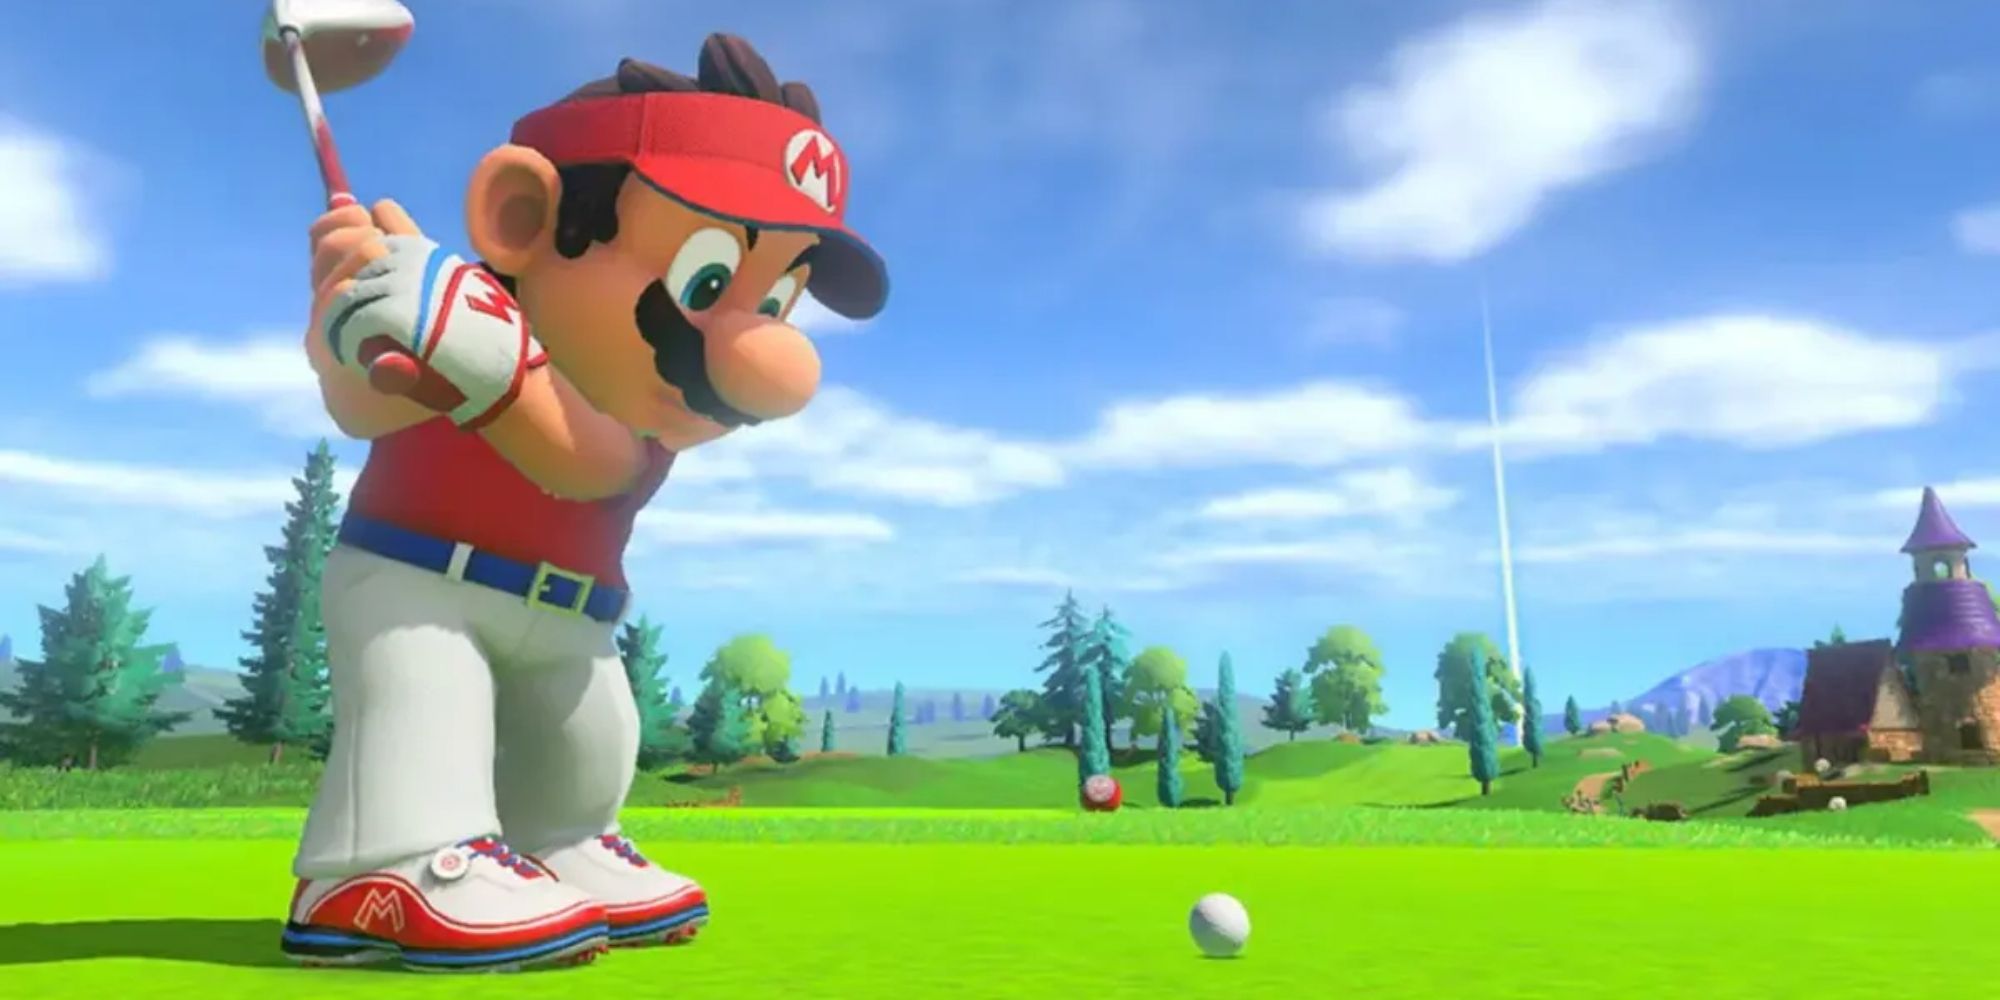 Mario swinging at a golf ball